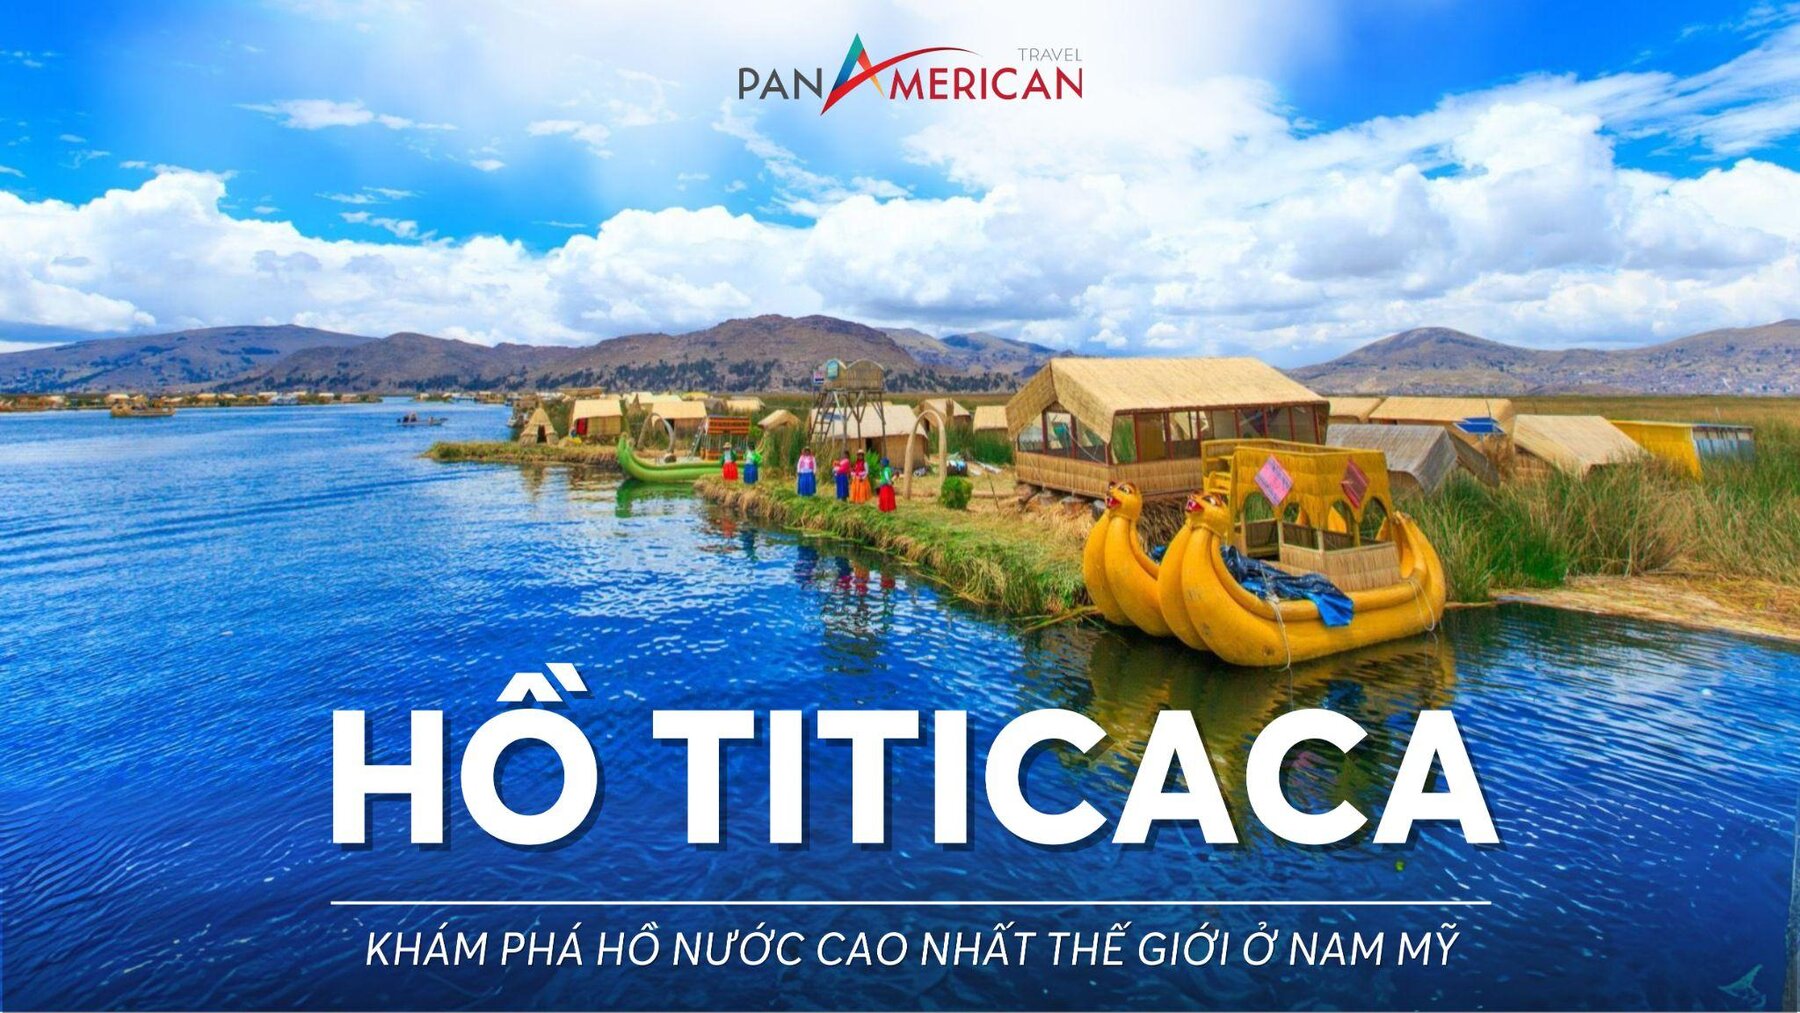 Hồ Titicaca - Khám phá hồ nước cao nhất thế giới ở Nam Mỹ